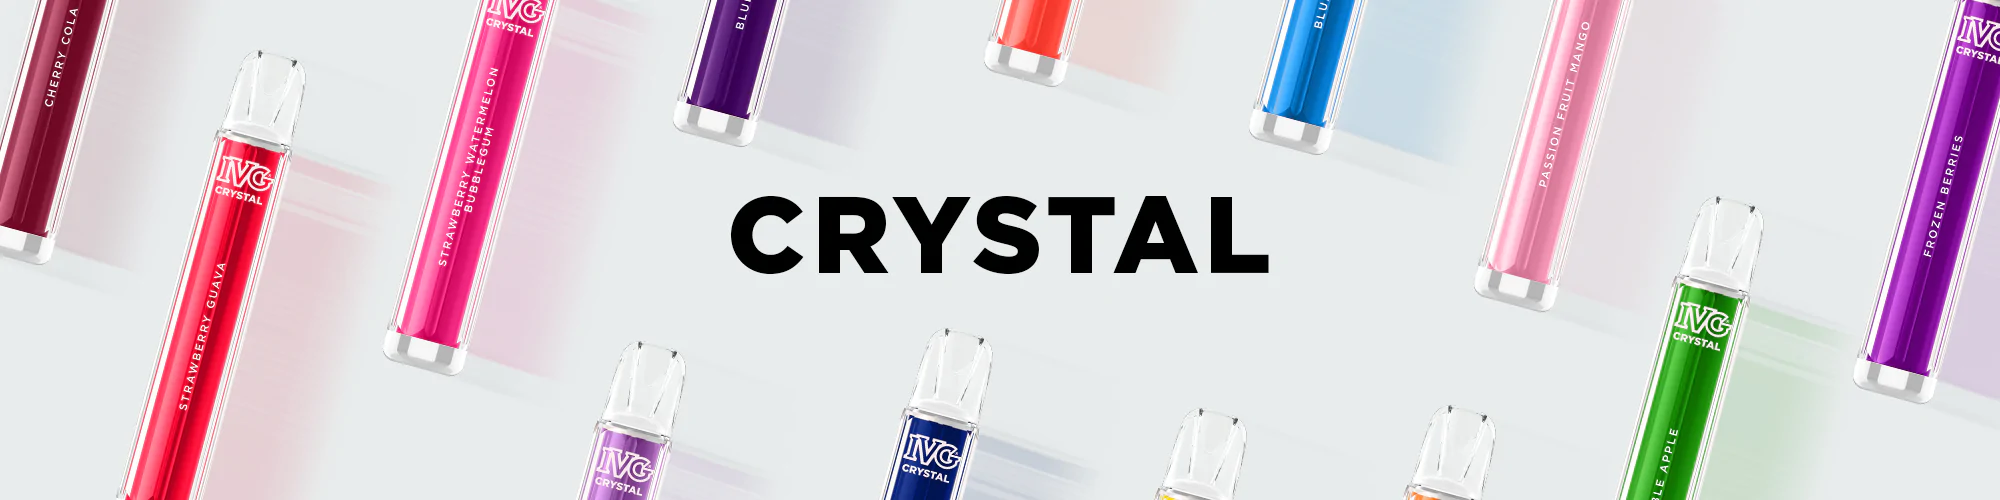 IVG BAR Crystal Disposable Vape